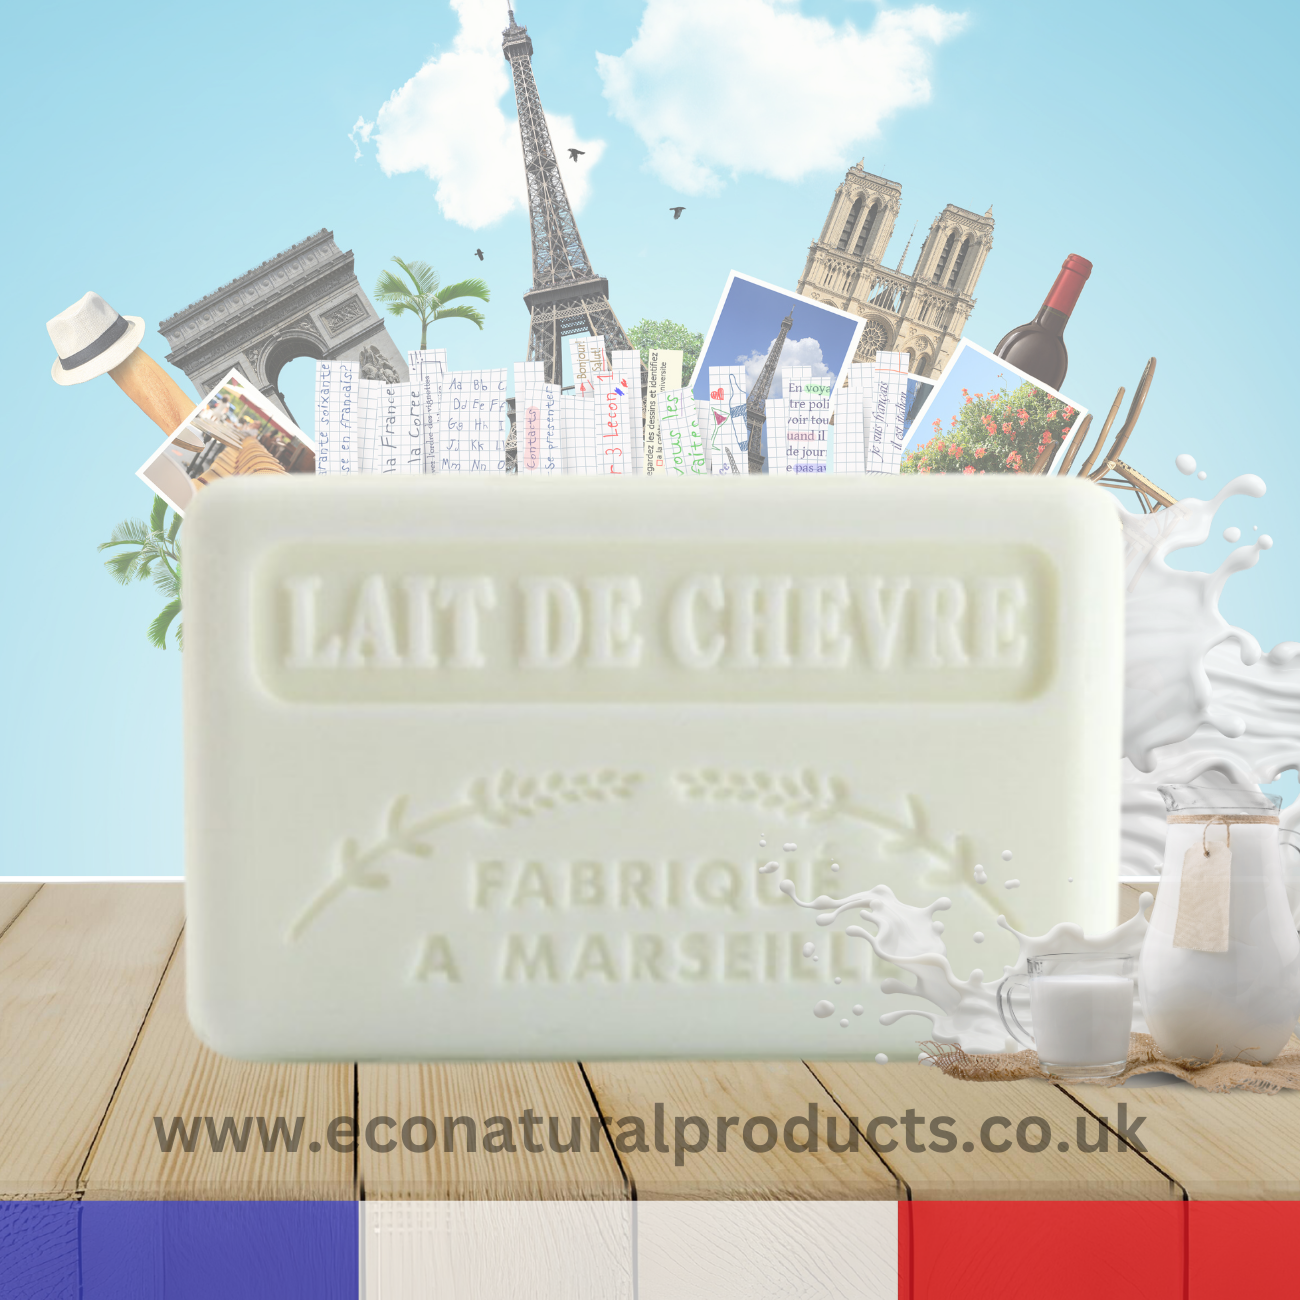 French Marseille Soap Lait de Chevre (Goat Milk) 125g